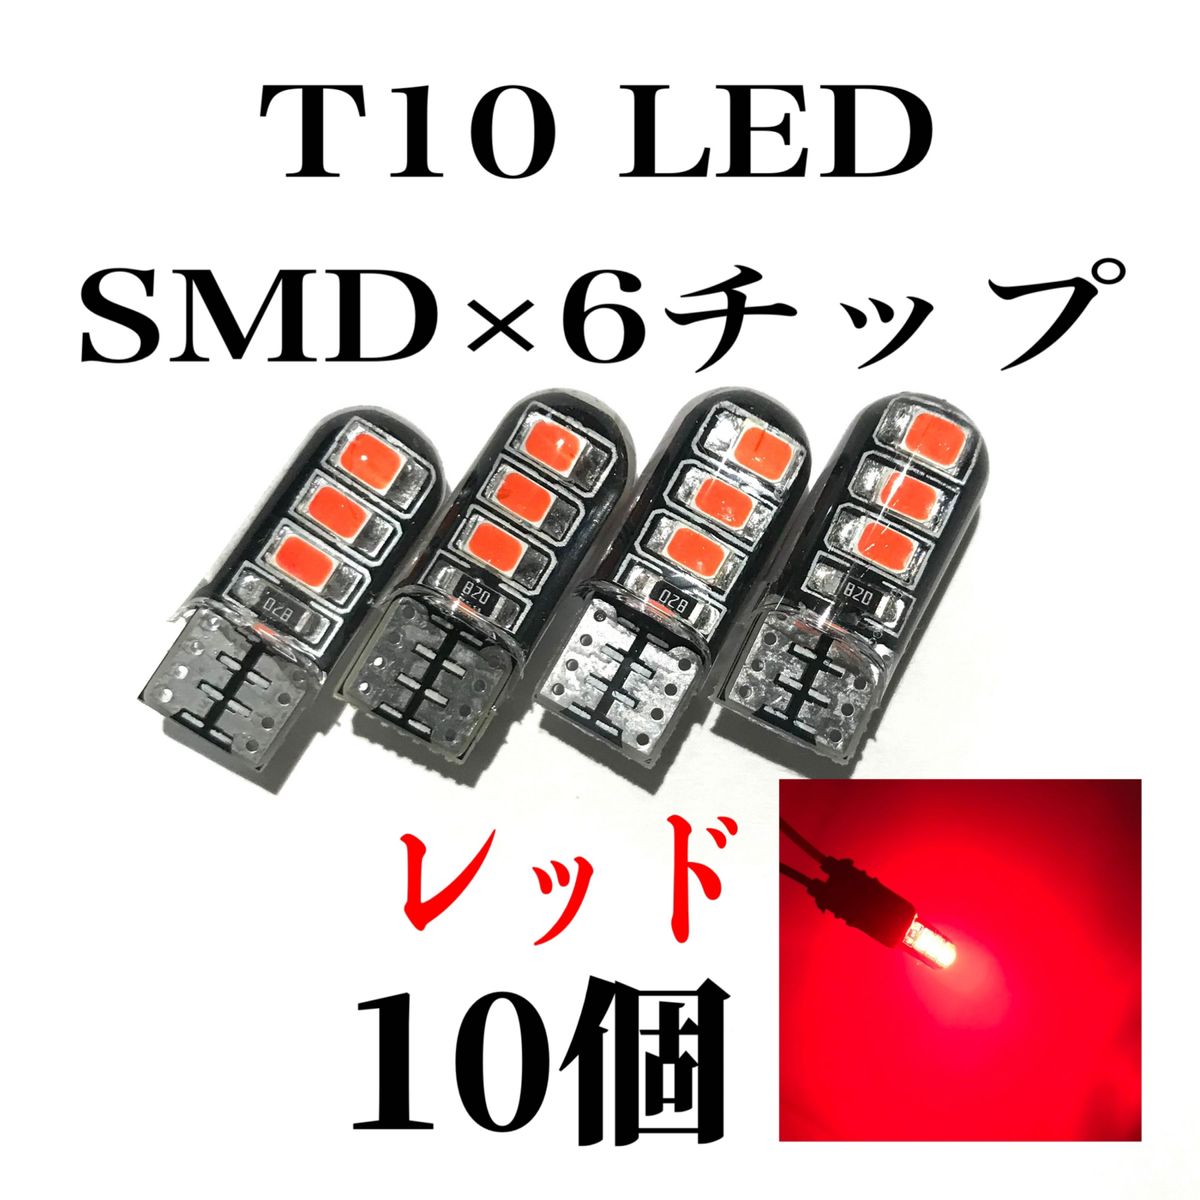 T10 LED SMD×6 赤 レッド 10個 CanBus エラーフリー キャンセラー 汎用品 車内灯 車外灯 ウェッジ